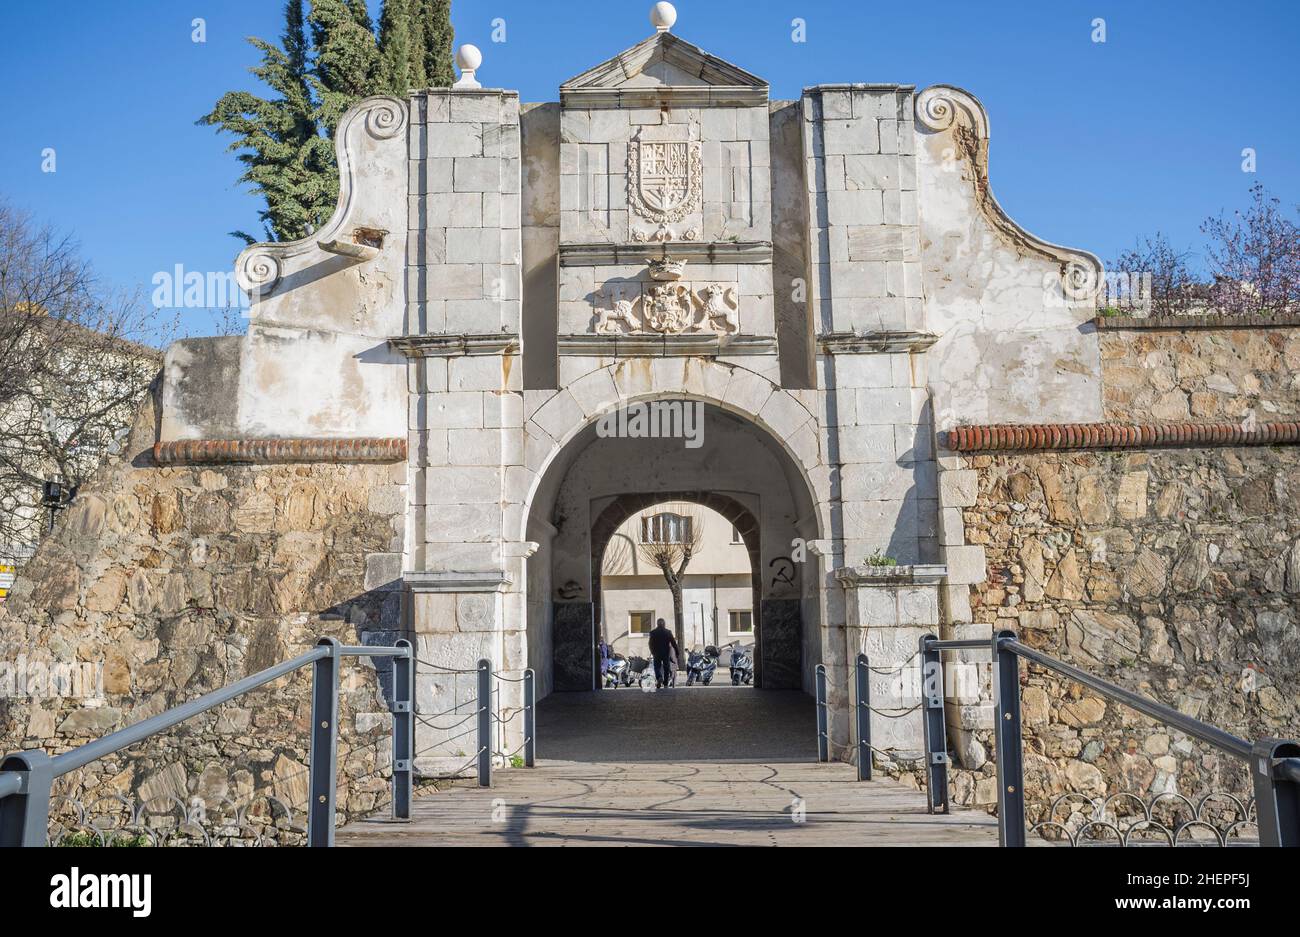 Pilar Gate oder Puerta Pilar, Badajoz, Extremadura, Spanien. Eingänge zu der befestigten Festung aus dem 17th. Jahrhundert Stockfoto